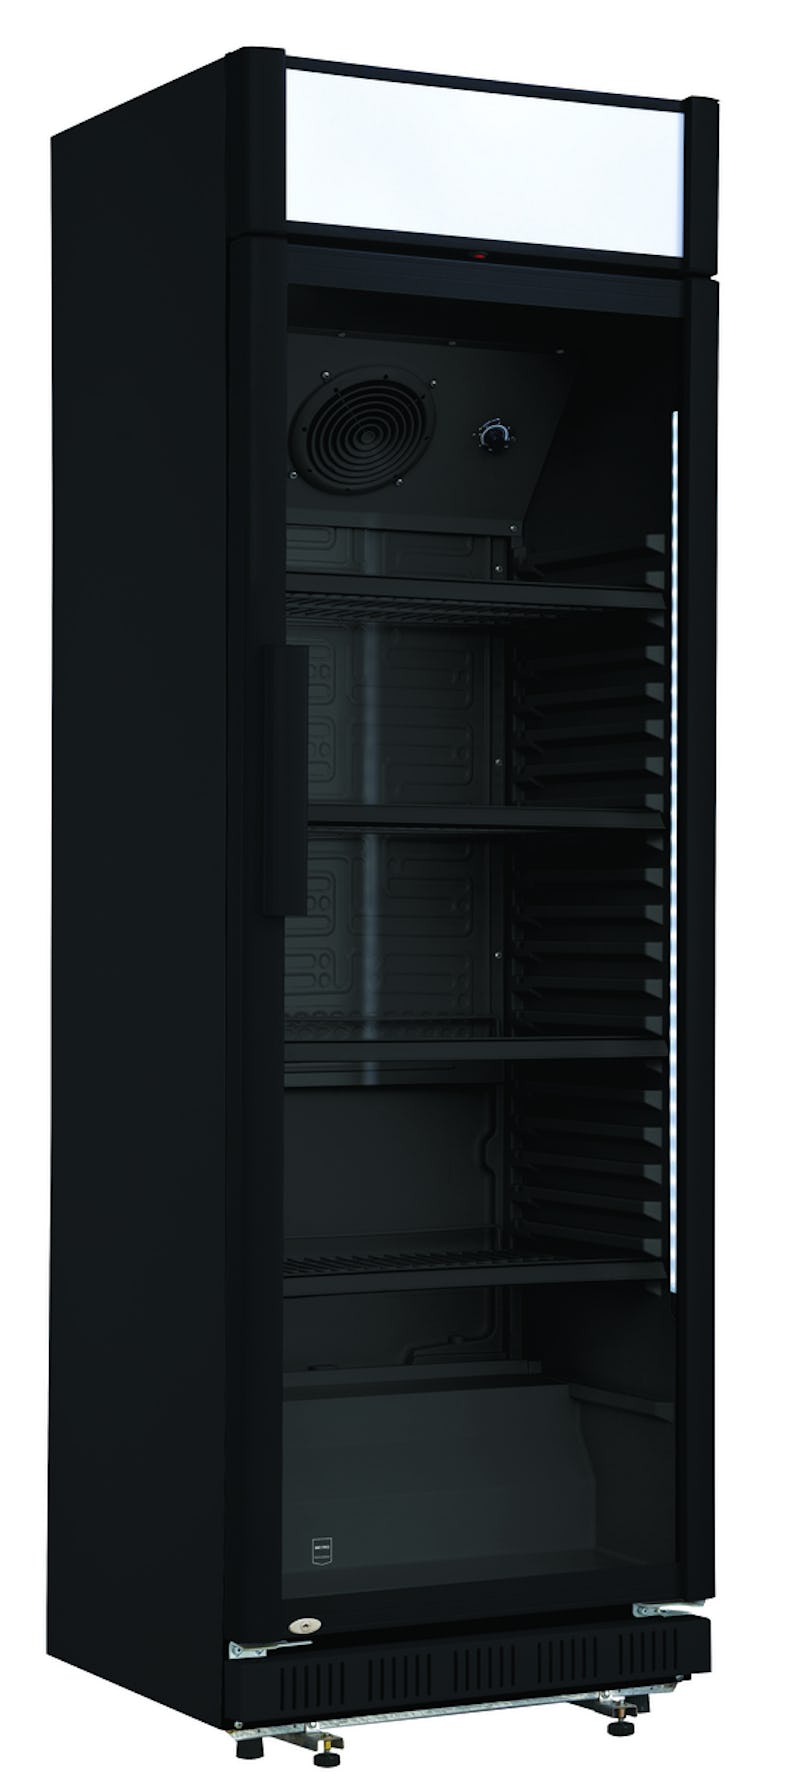 METRO Professional Frigorifíco para bebidas GPC1088, metal/cristal, 43 x 49  x 83 cm, 88 L, refrigeración estática, negro